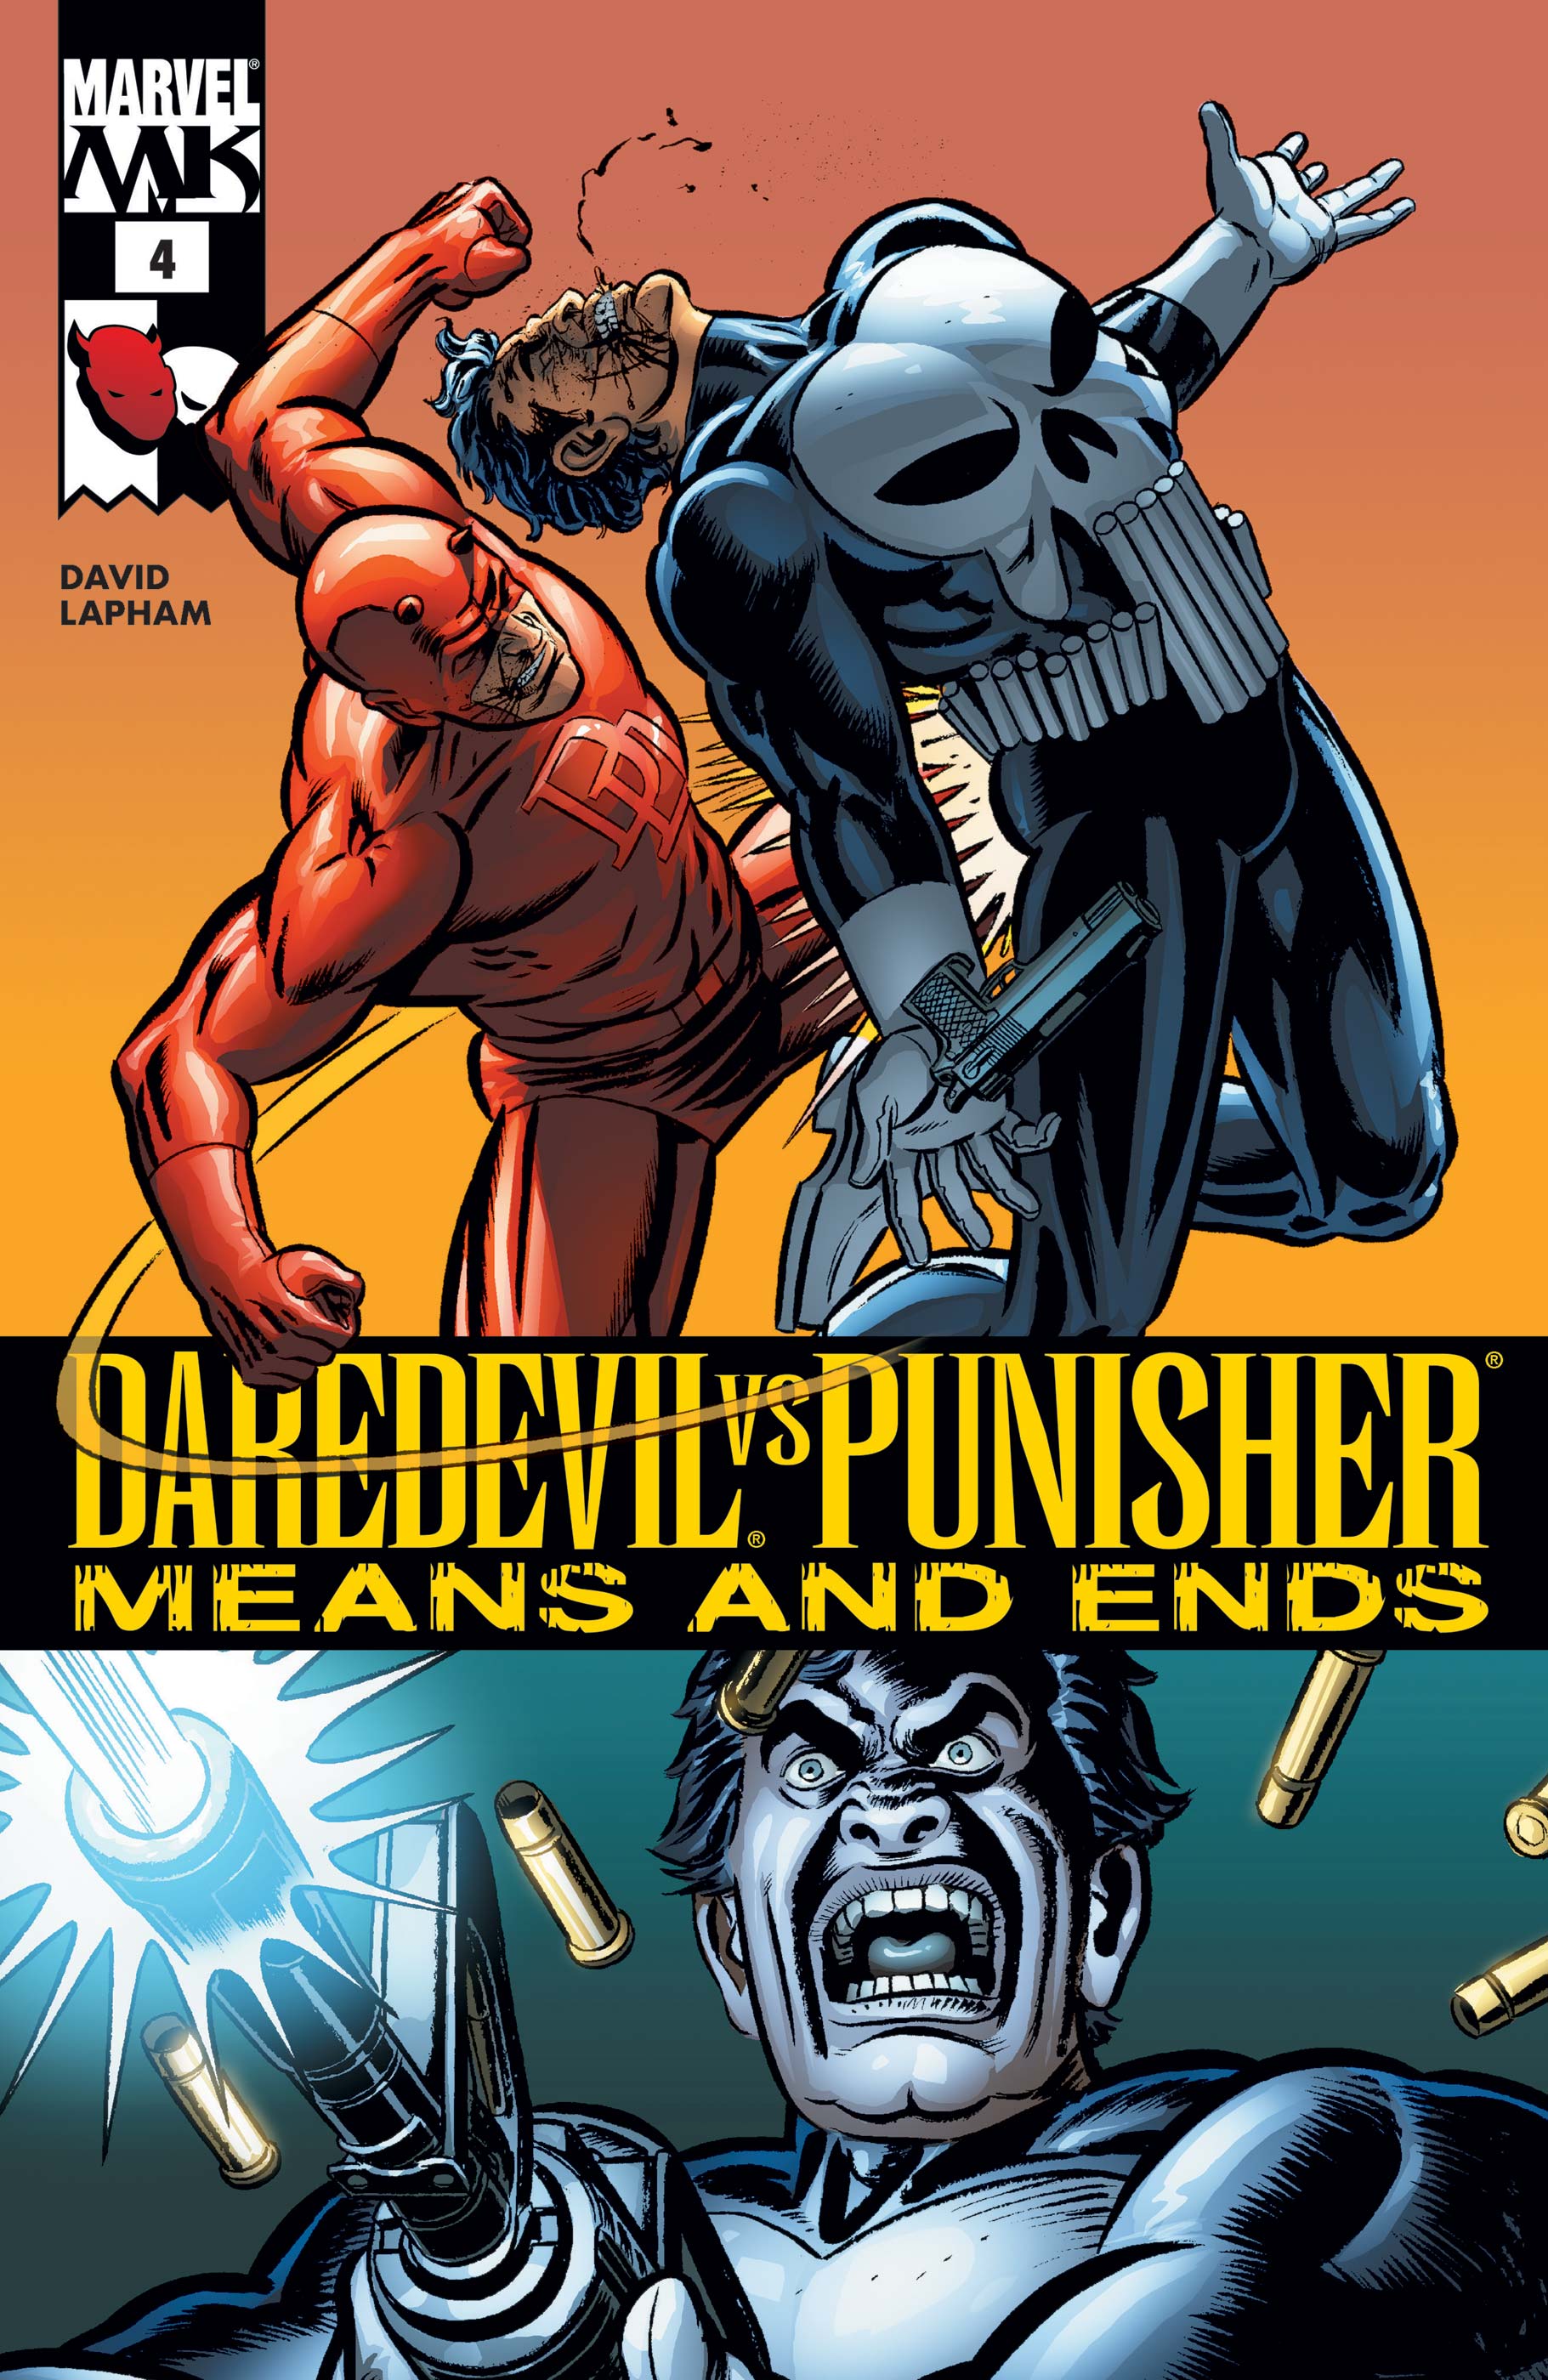 Daredevil Vs. Punisher (2005) #4